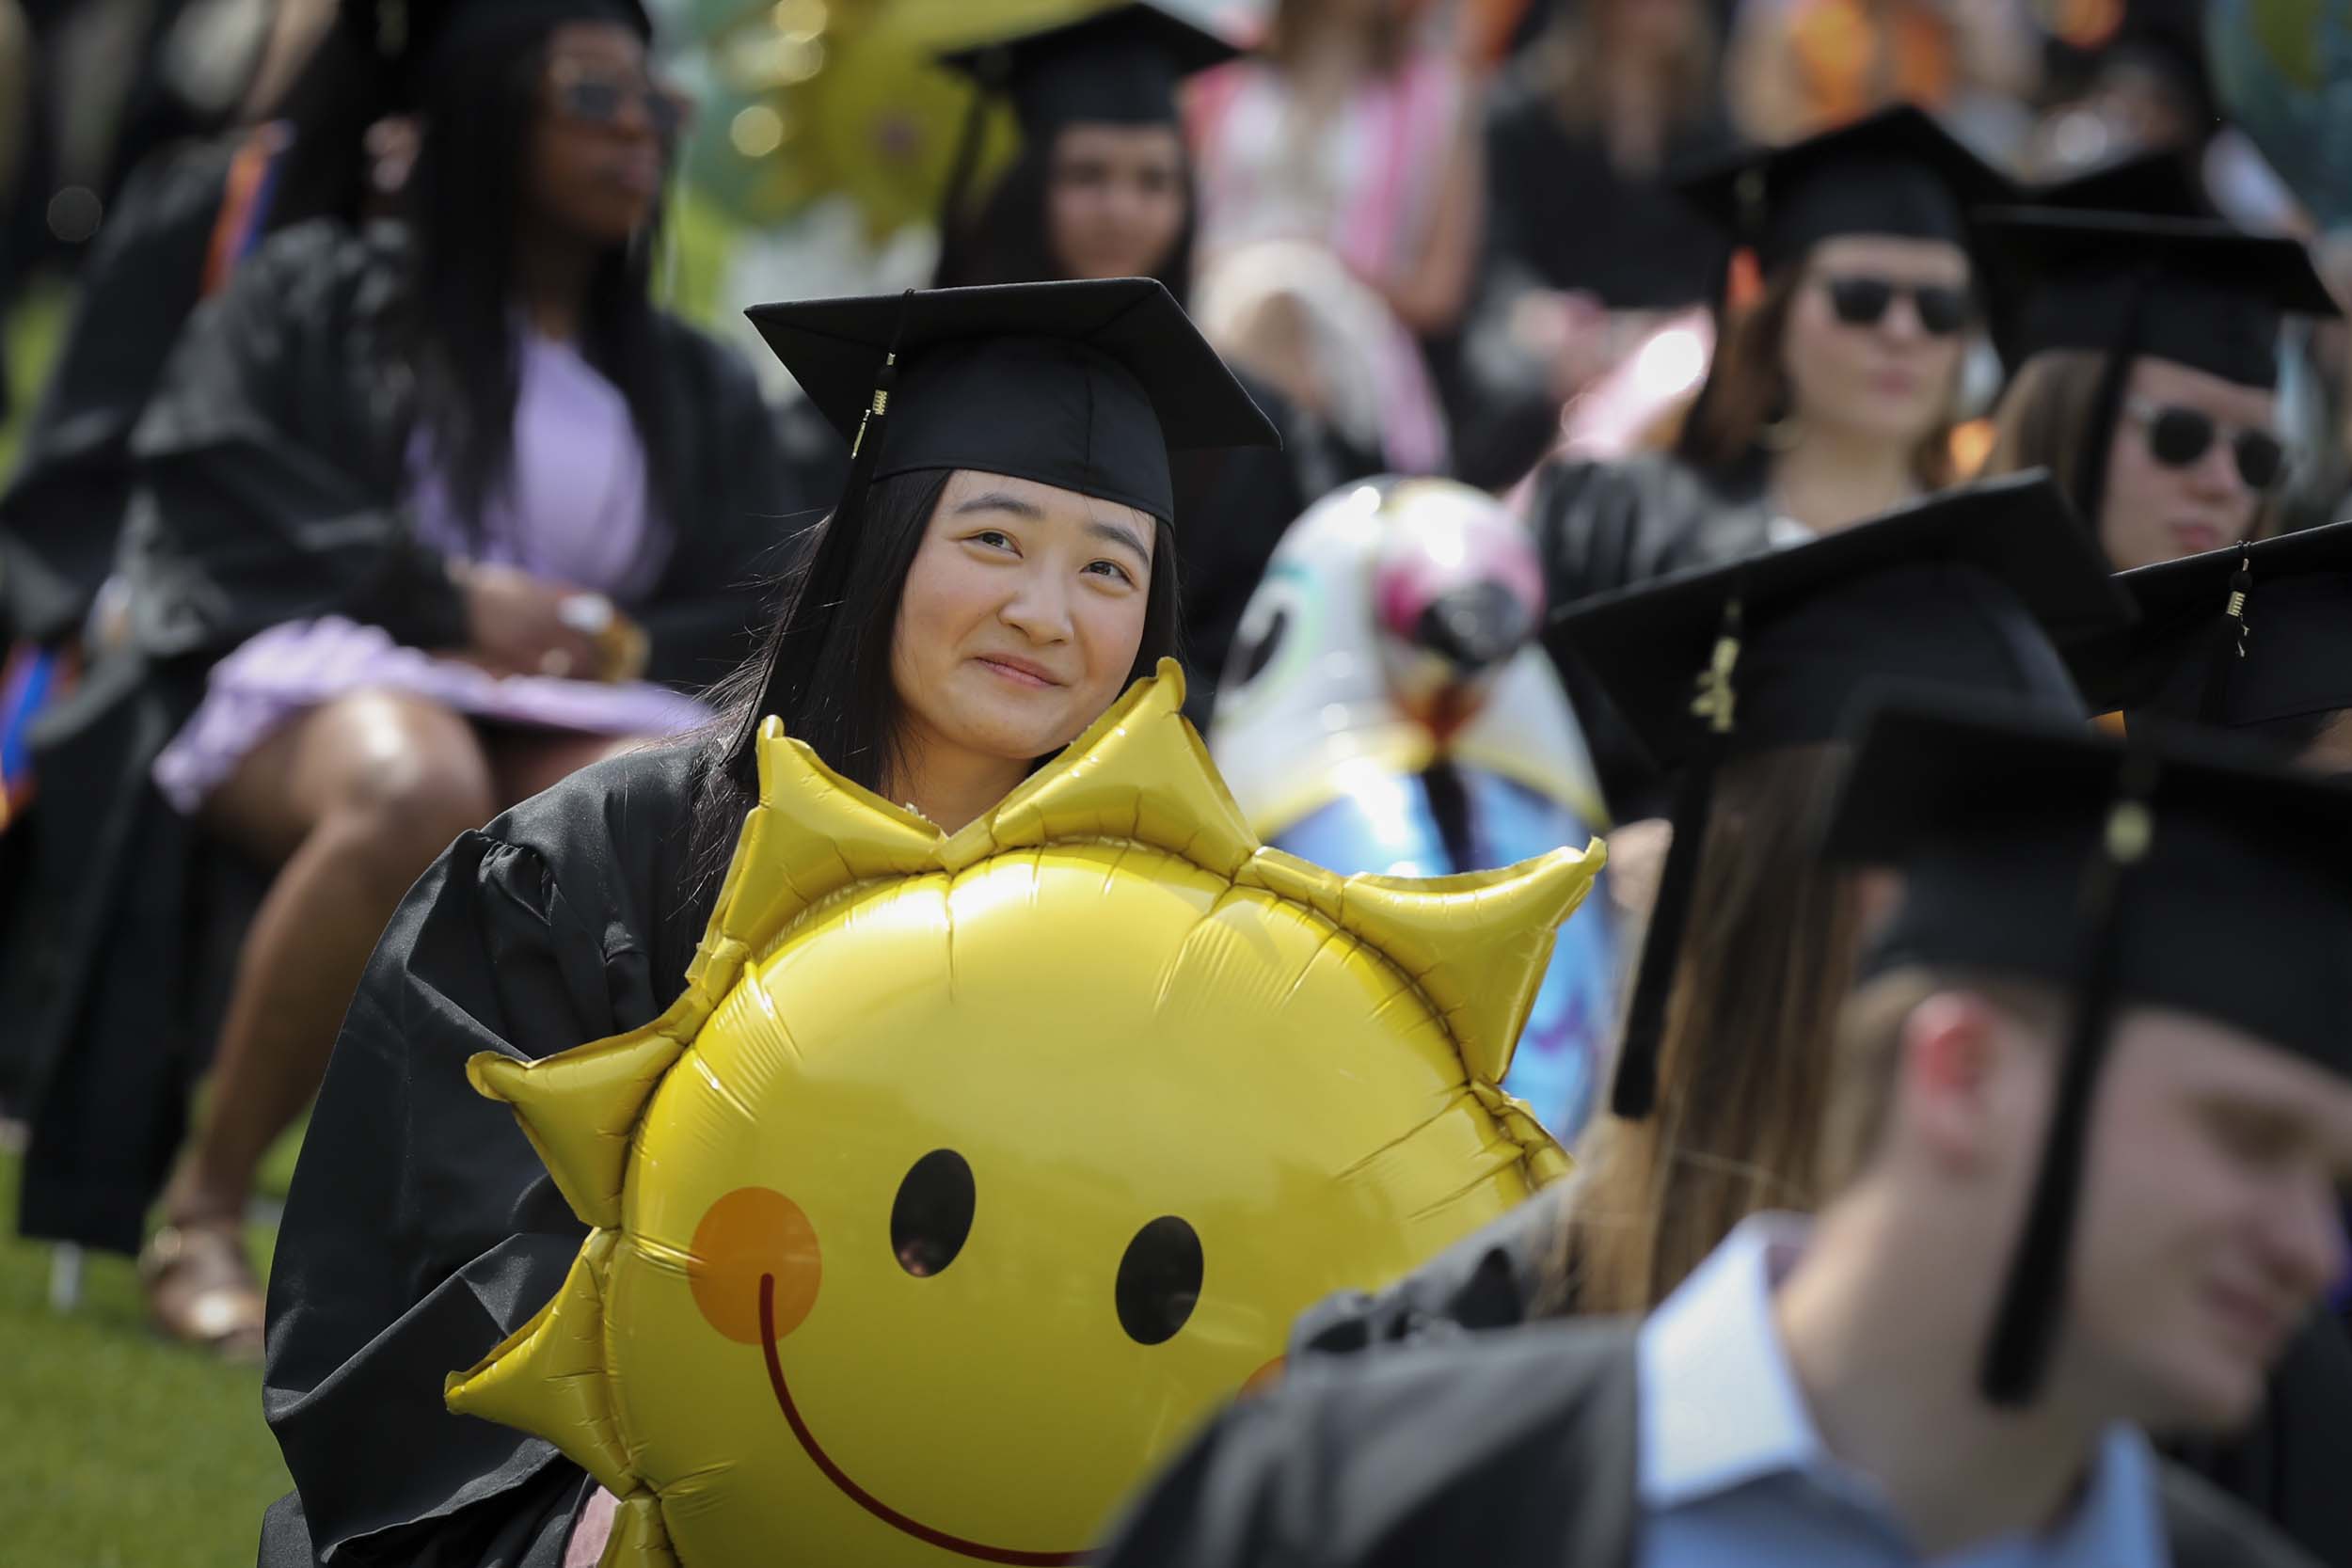 Graduate holding sun balloon 